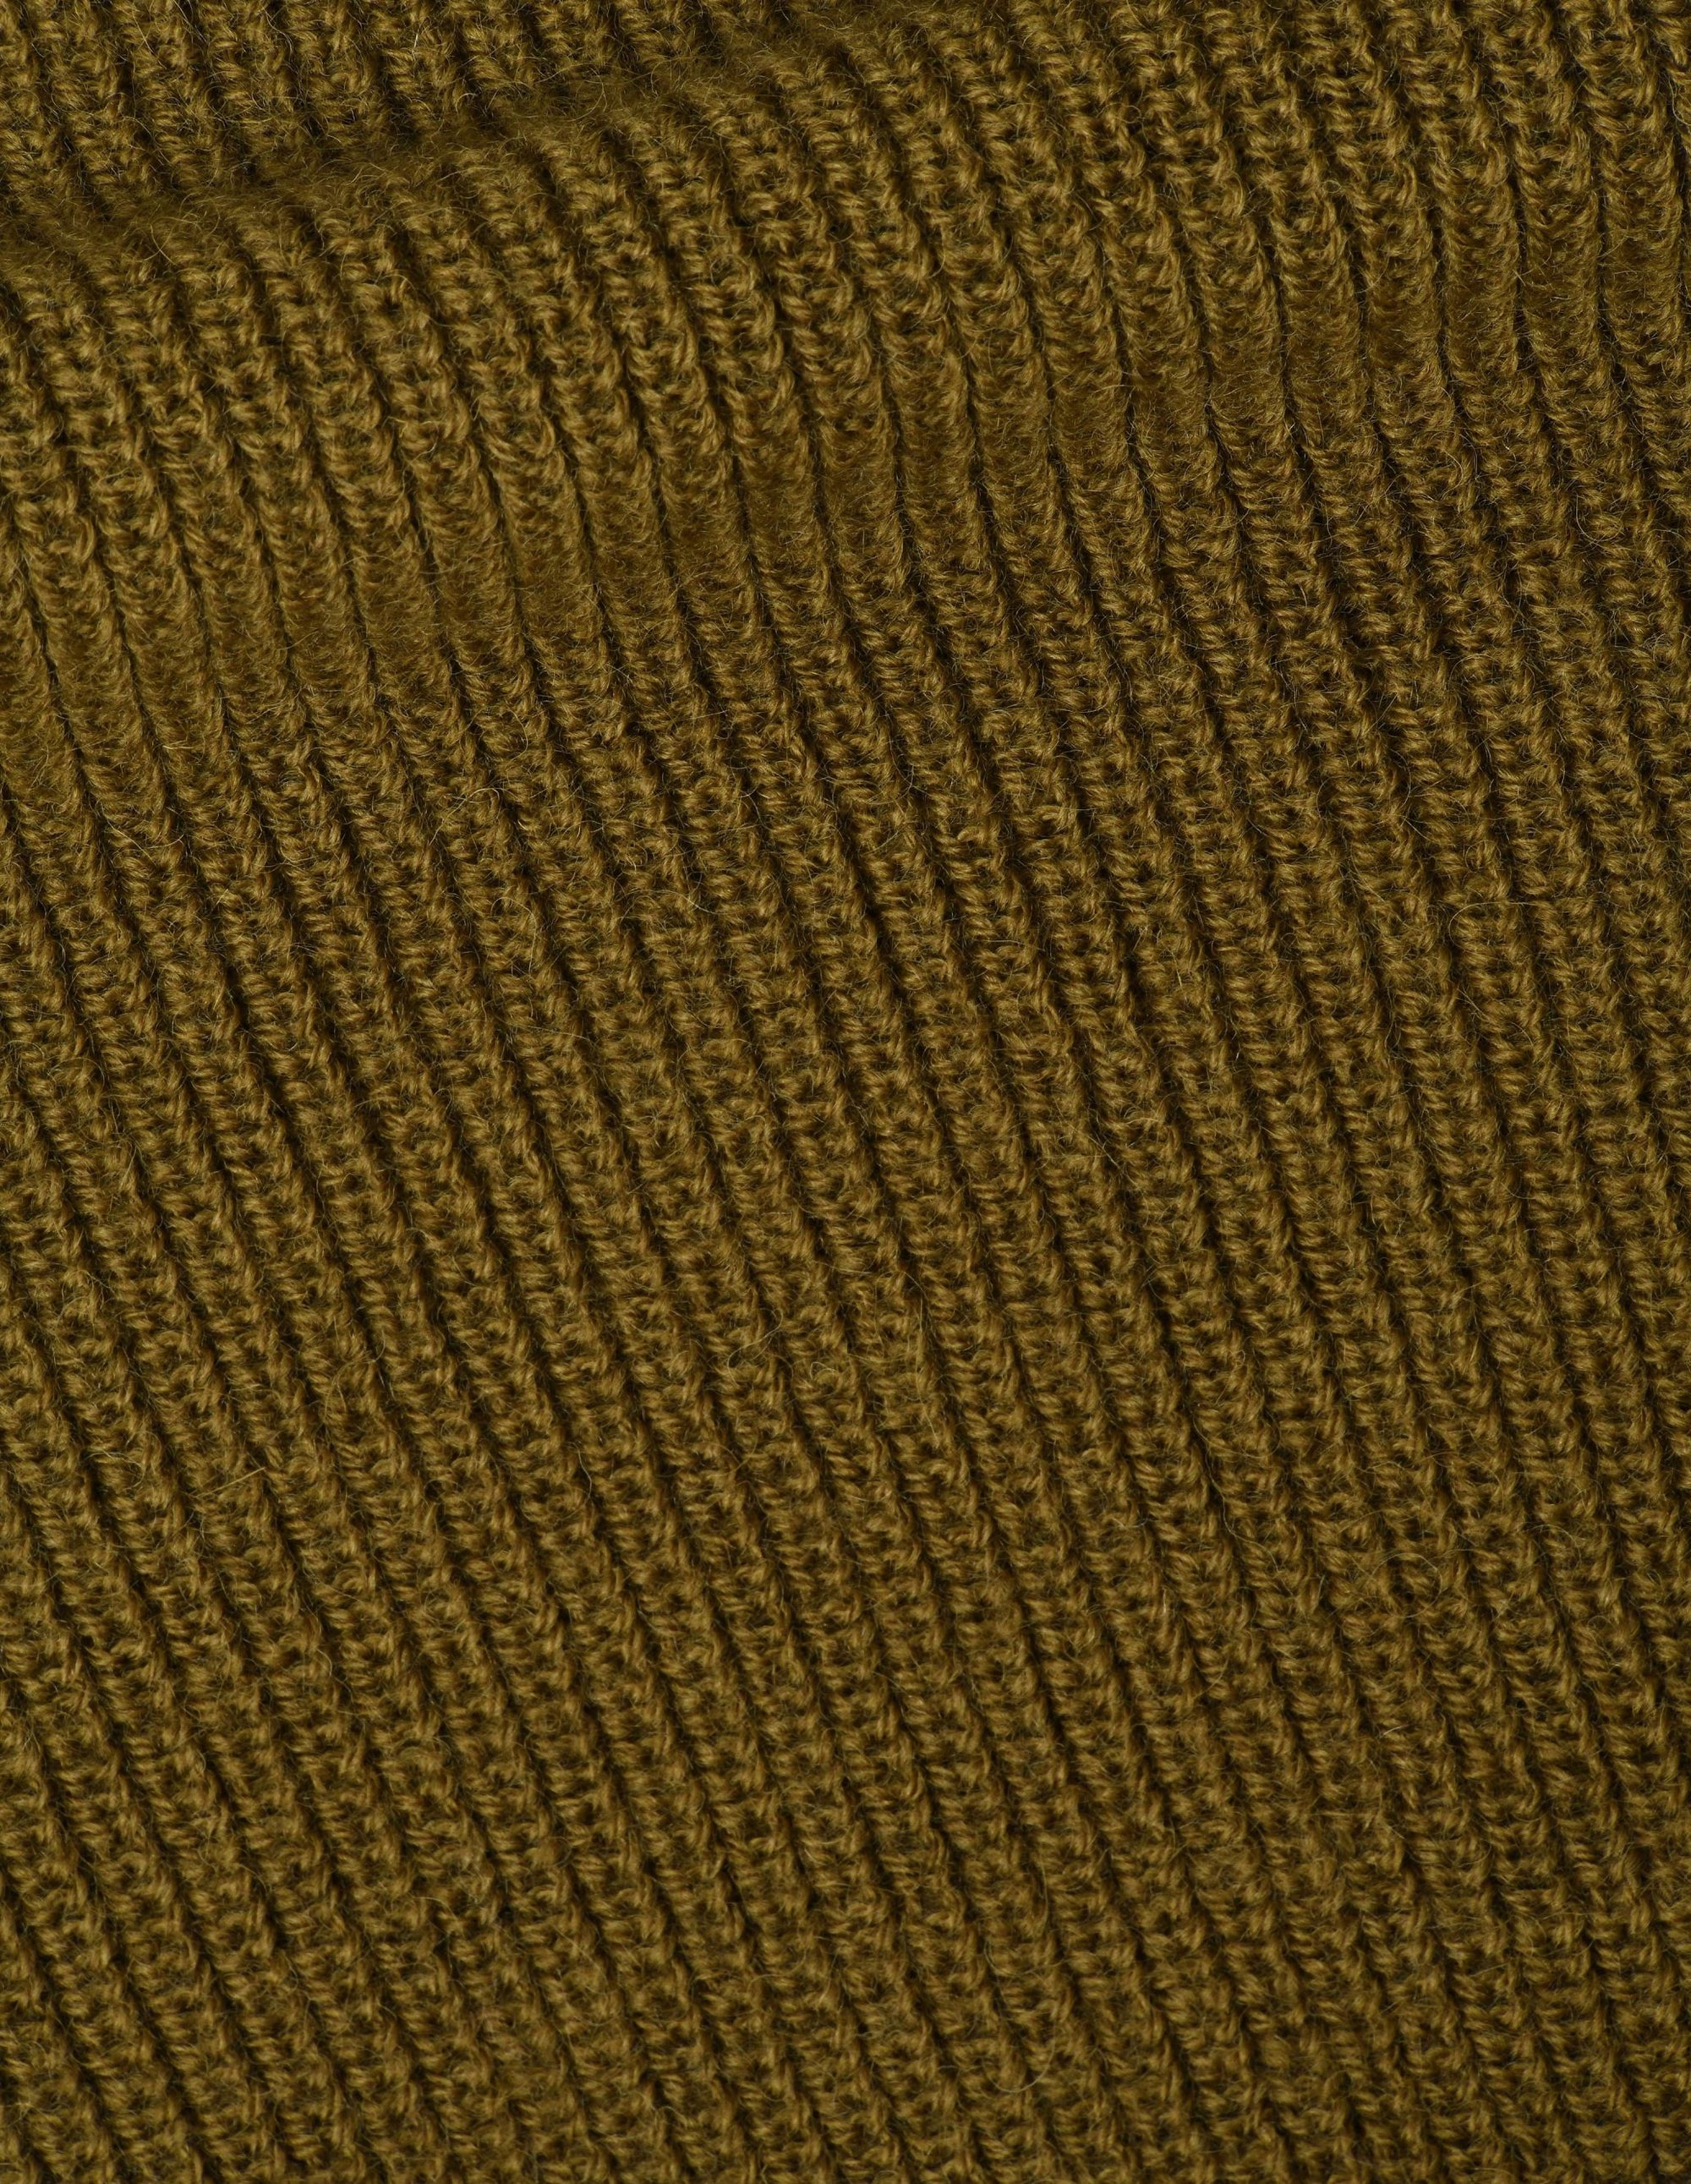 Chunky Ribbed Slipover Virgin Wool - Khaki